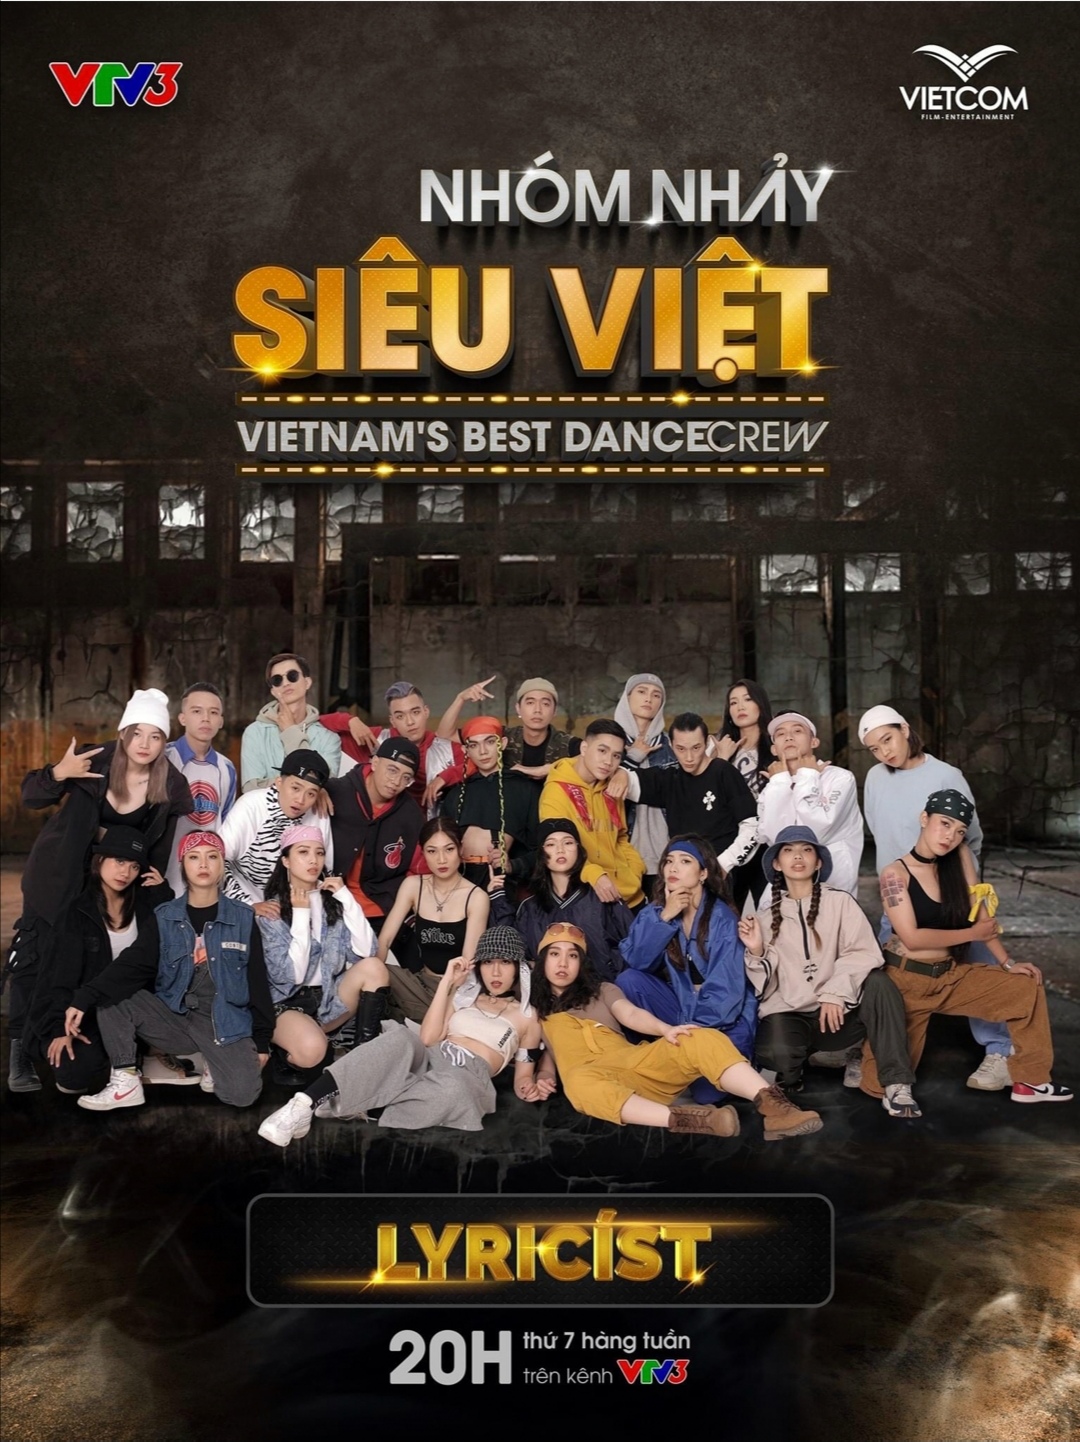 Screenshot 20210519 171938 Biên đạo Alex Tú mang nhóm nhảy đến với sân chơi Nhóm nhảy siêu Việt   Vietnam’s Best Dance Crew